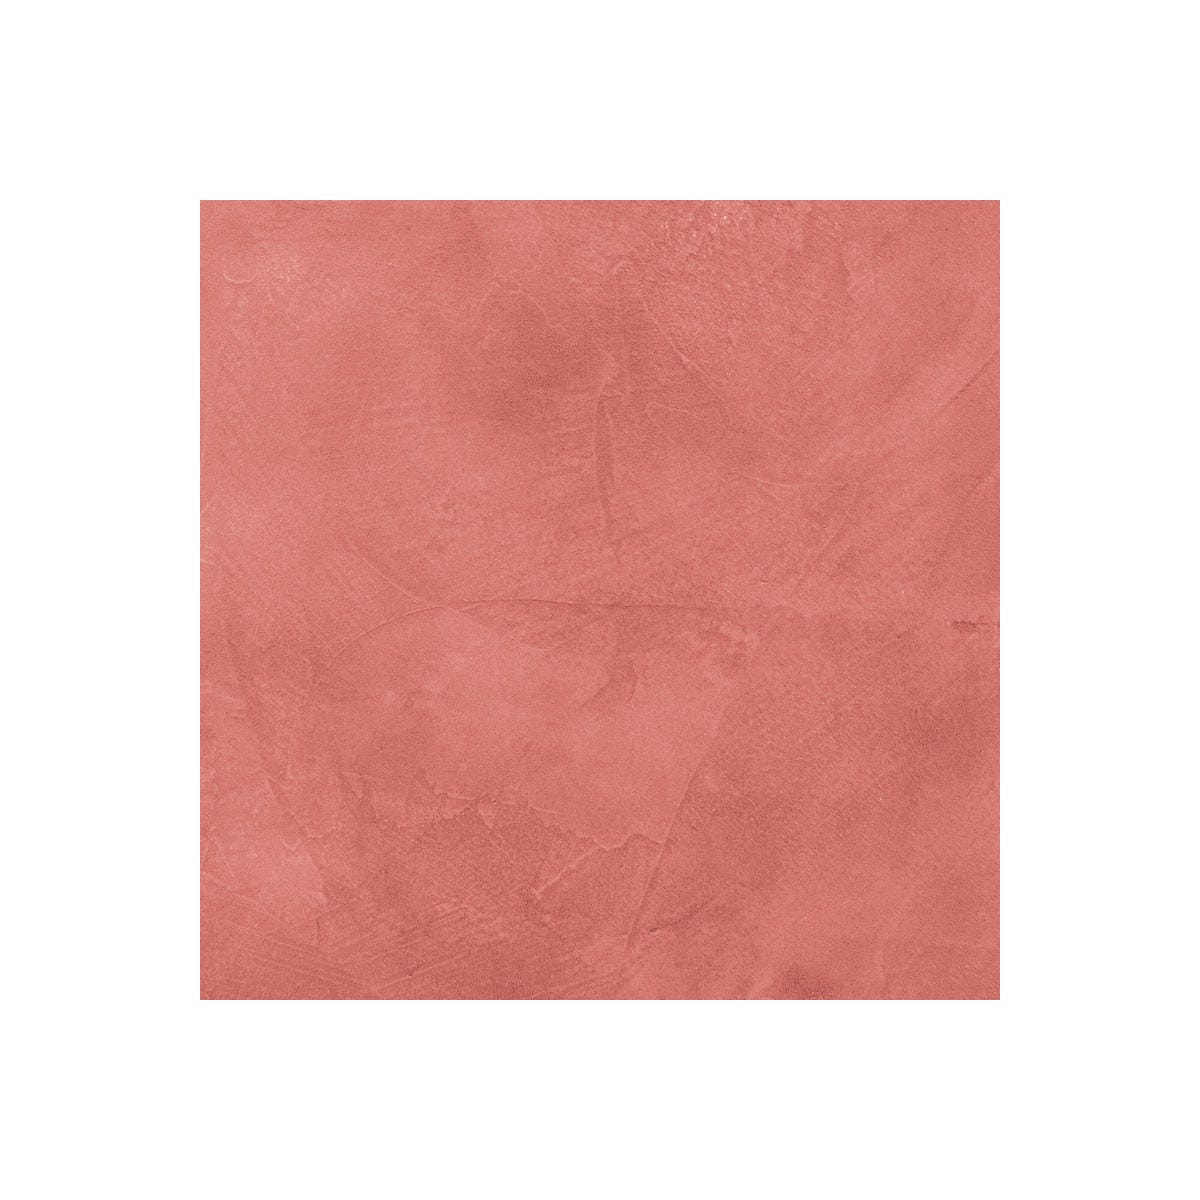 Béton Ciré Escalier - Complet primaire et vernis de finition - En neuf ou rénovation Papaye Rose Orange - 2 m² (en 2 couches)ARCANE INDUSTRIES 2